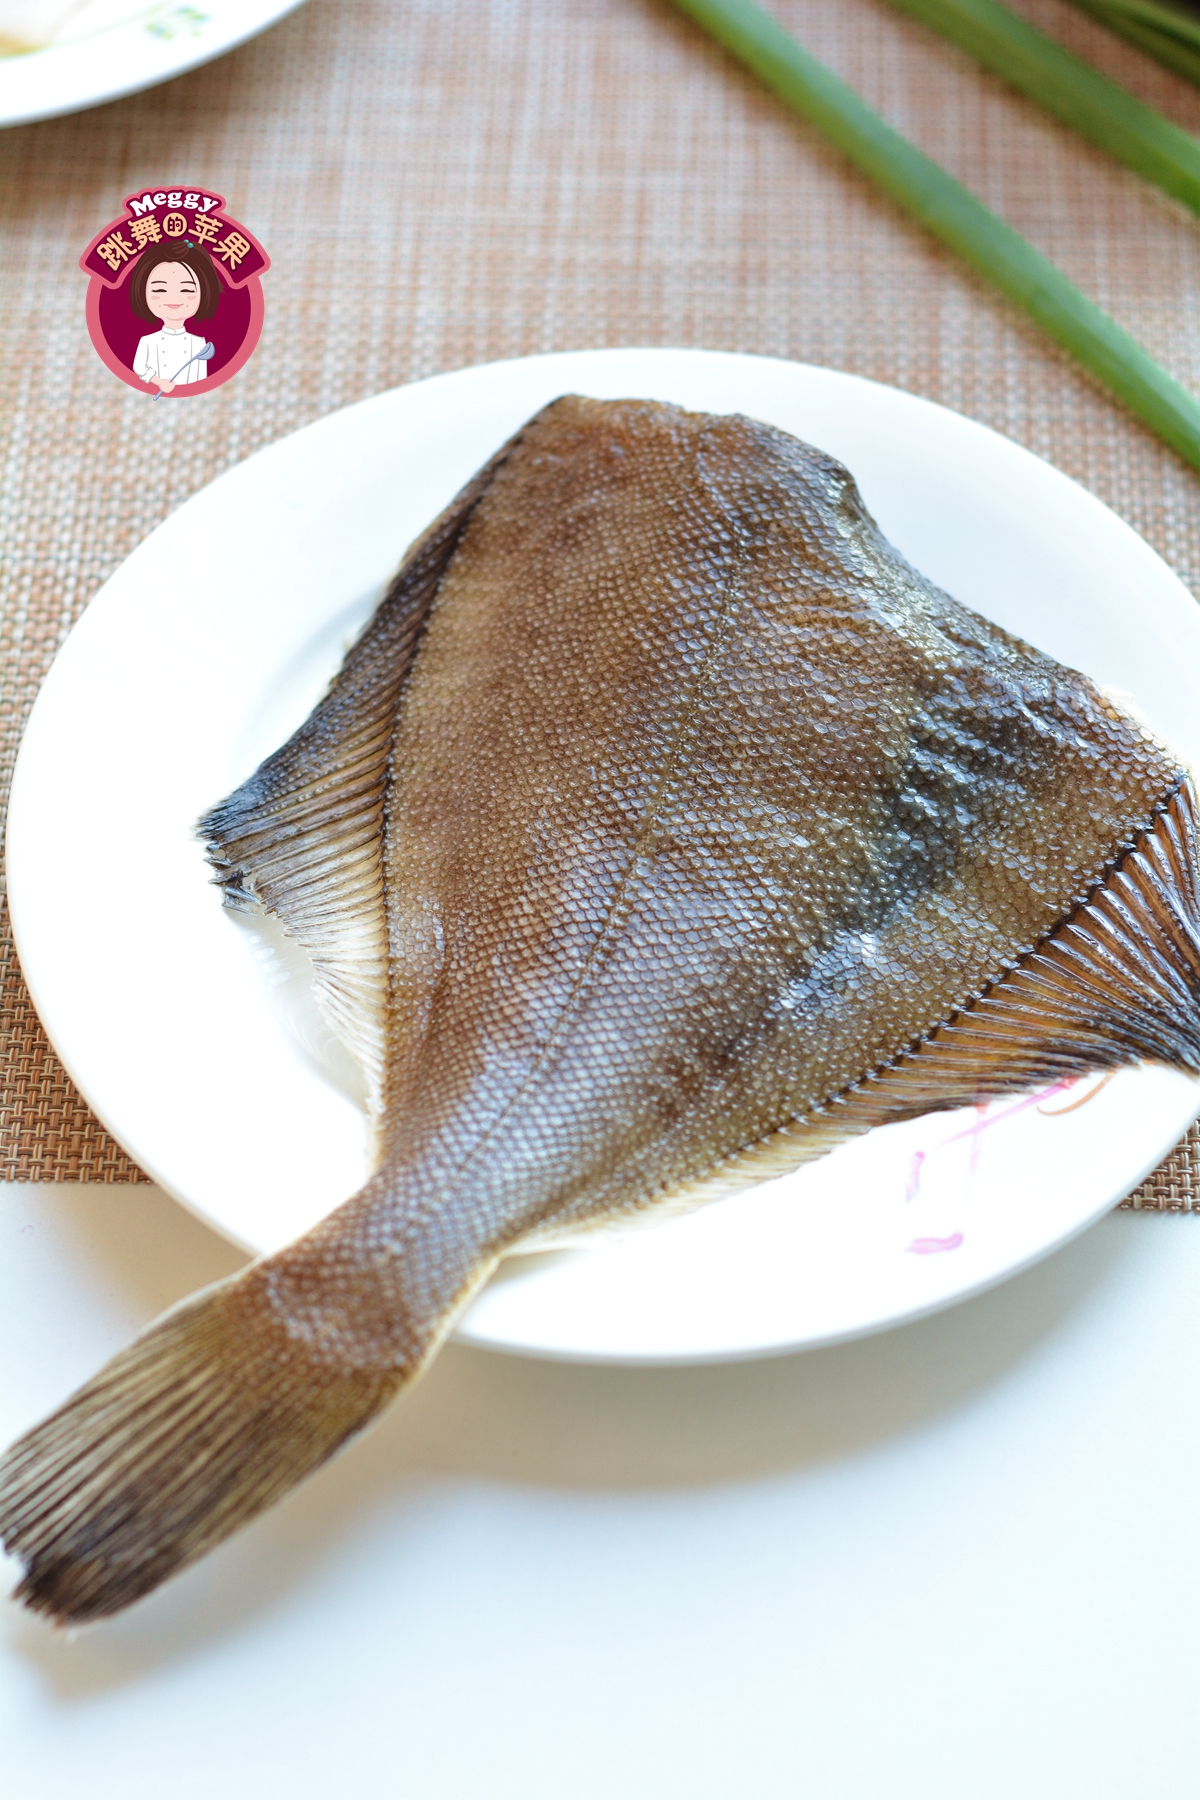 海鱼不煎不炸不用油，8分钟出锅，低脂少盐，鲜嫩肥美真省事